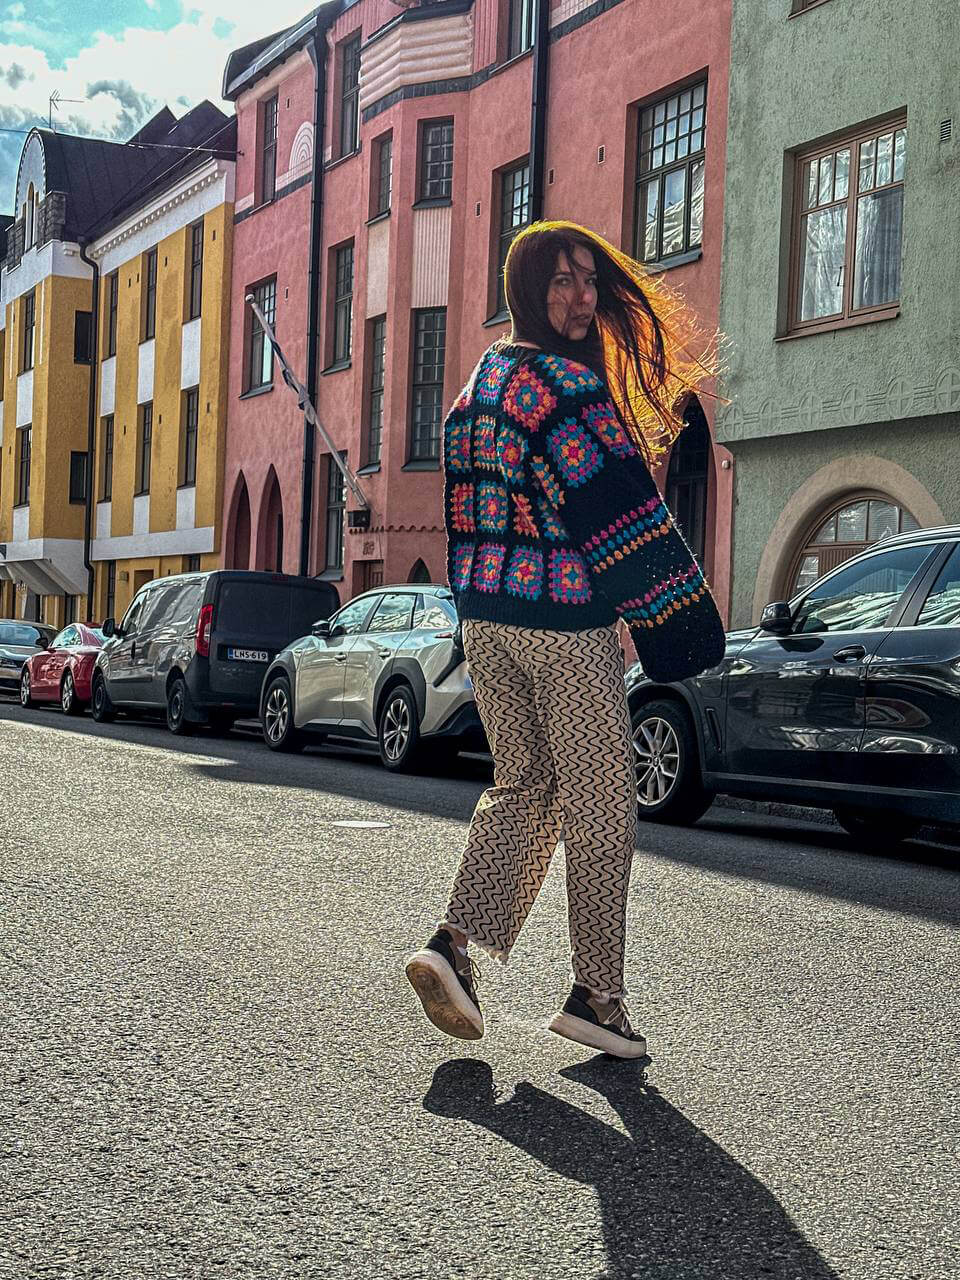 Анастасия гуляет по любимой улице в Хельсинки